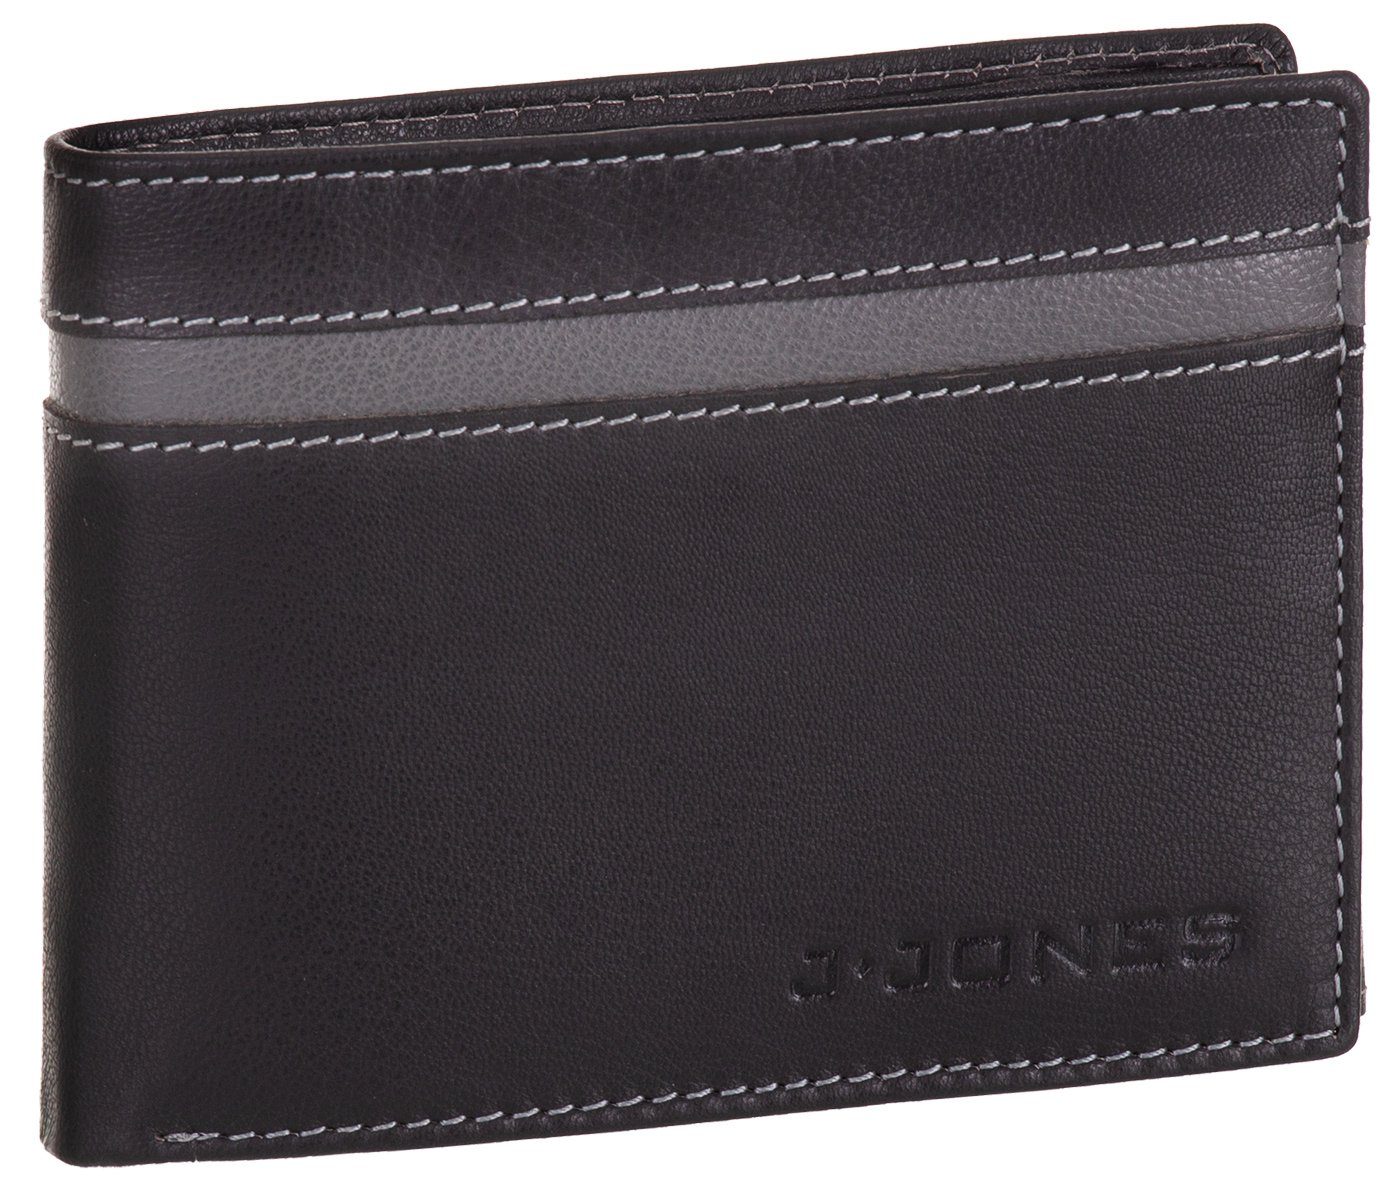 J.Jones Geldbörse, Geldbörse faltbar Echt Leder RFID-Schutz mit Münzfach Portemonnaie Geldbeutel schwarz-grau